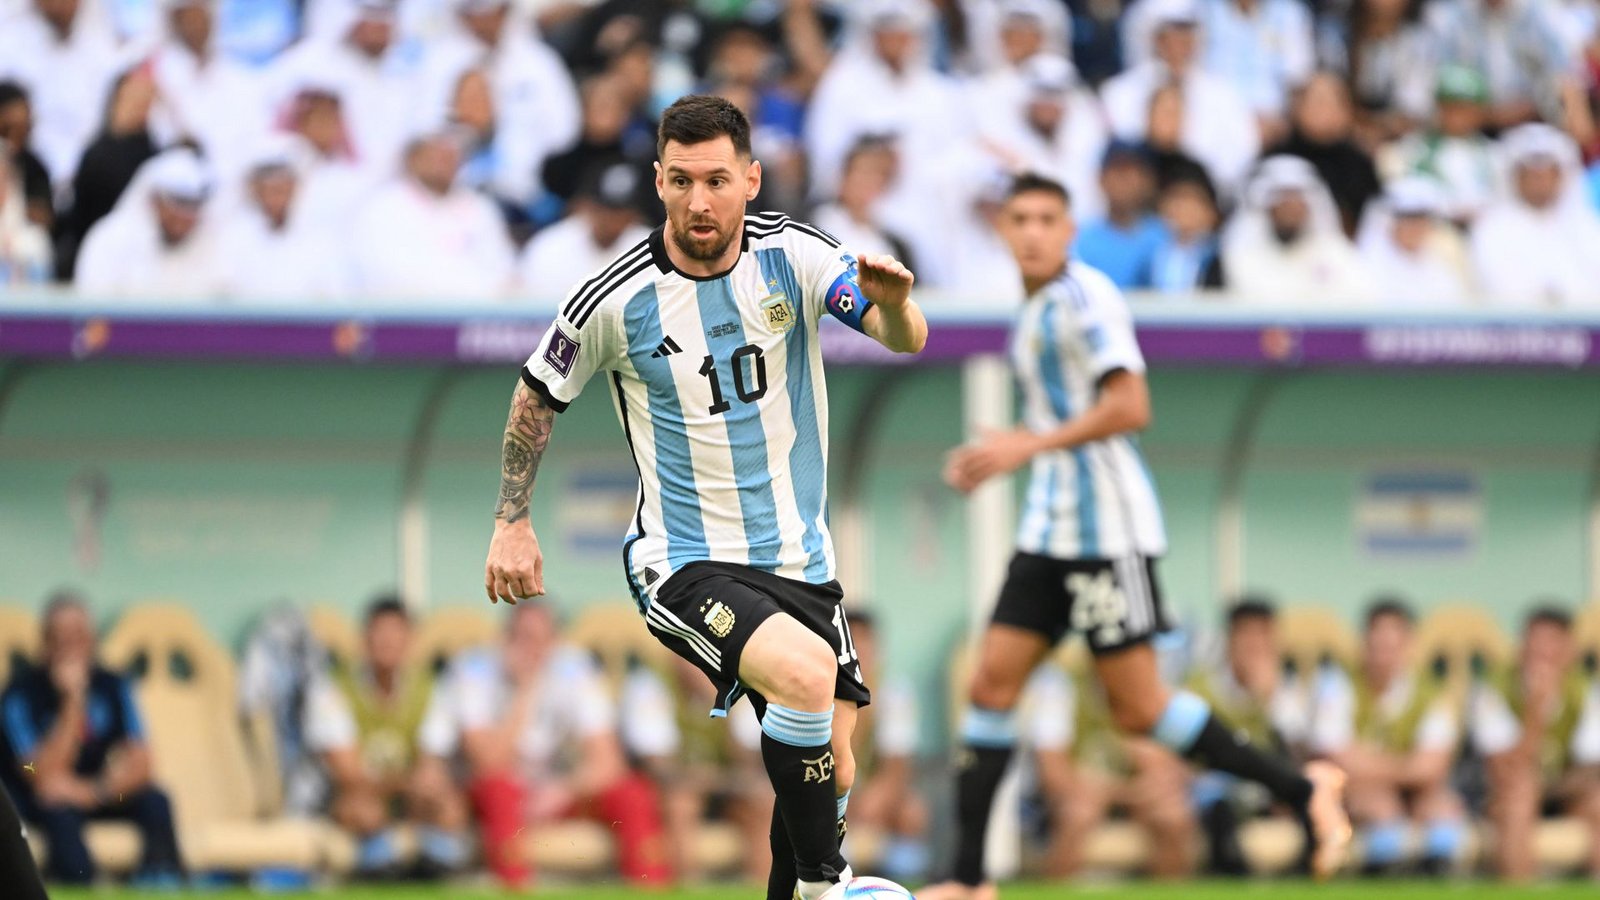 Gegen Mexiko stehen Messi und seine argentinischen Mitspieler mächtig unter Druck.Foto: imago//Takamoto Tokuhara